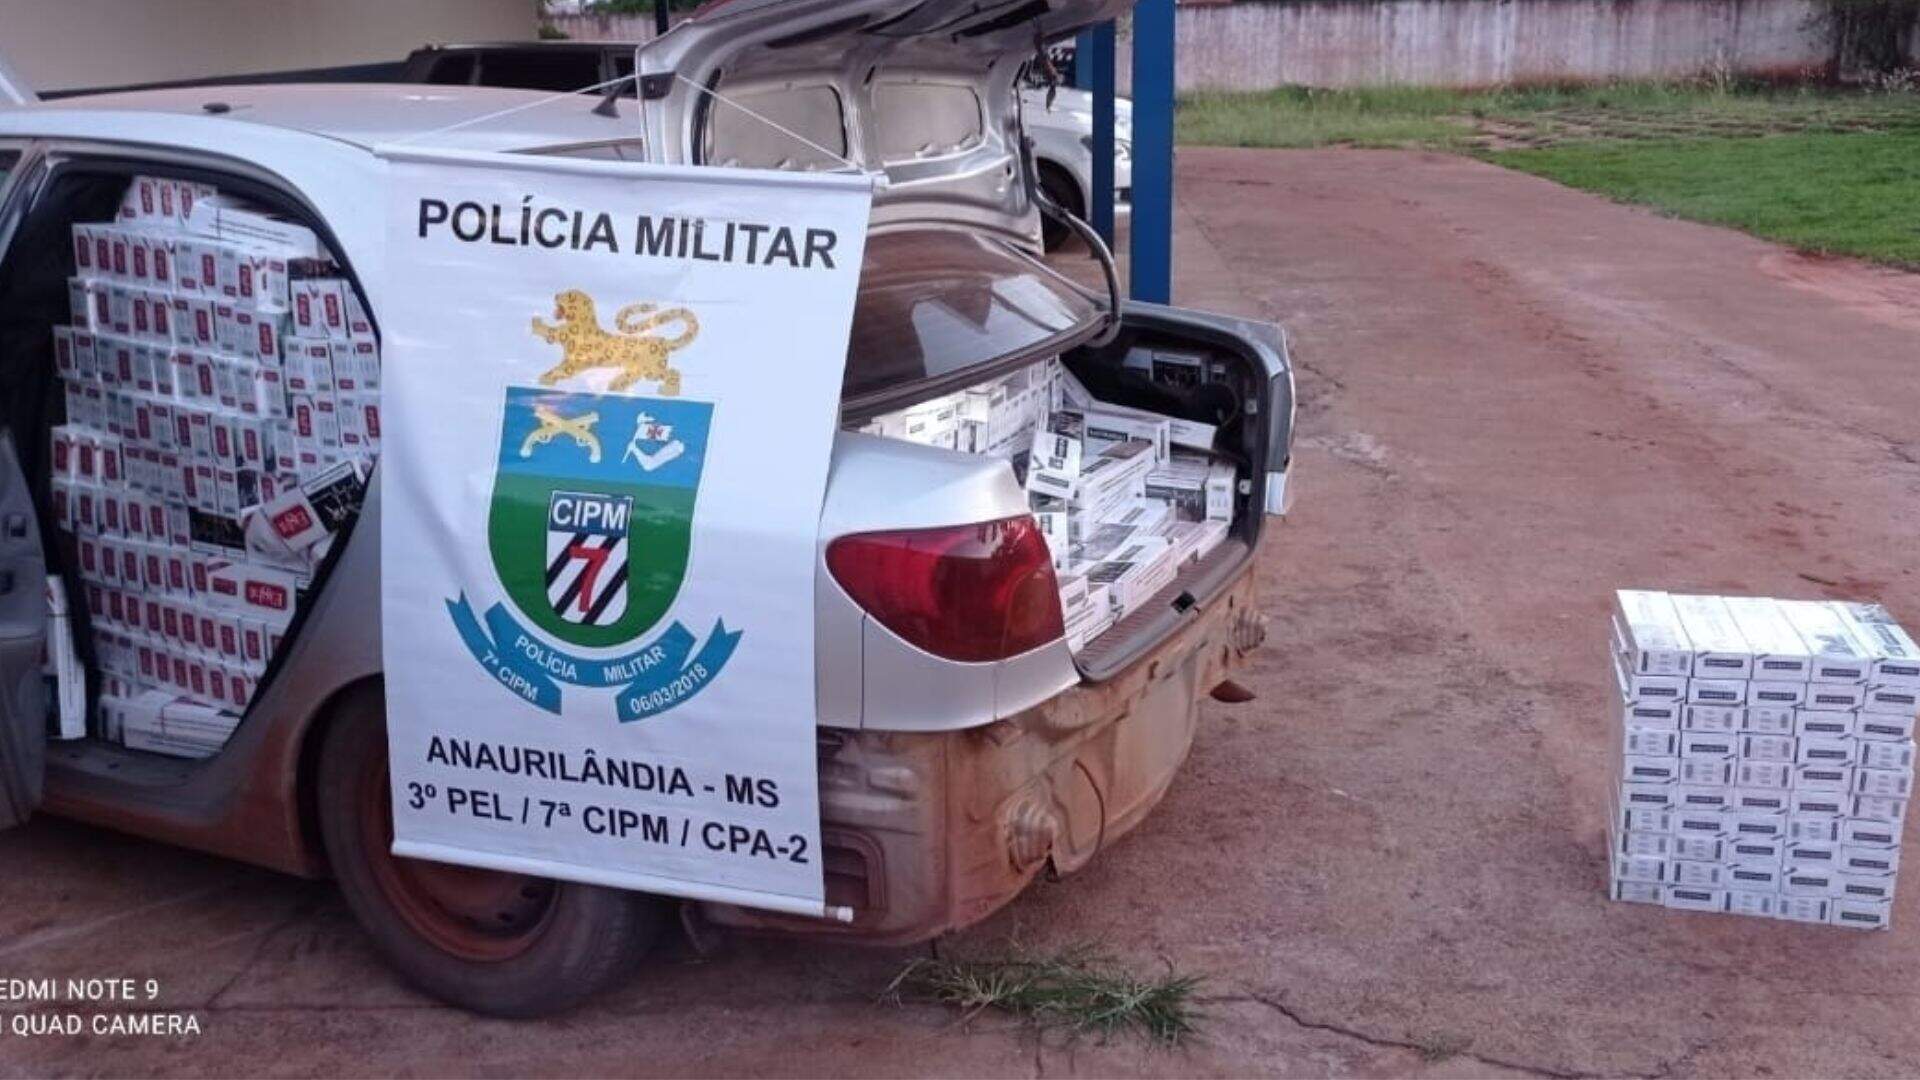 PM apreende veículo carregado com cigarros contrabandeados em Anaurilândia